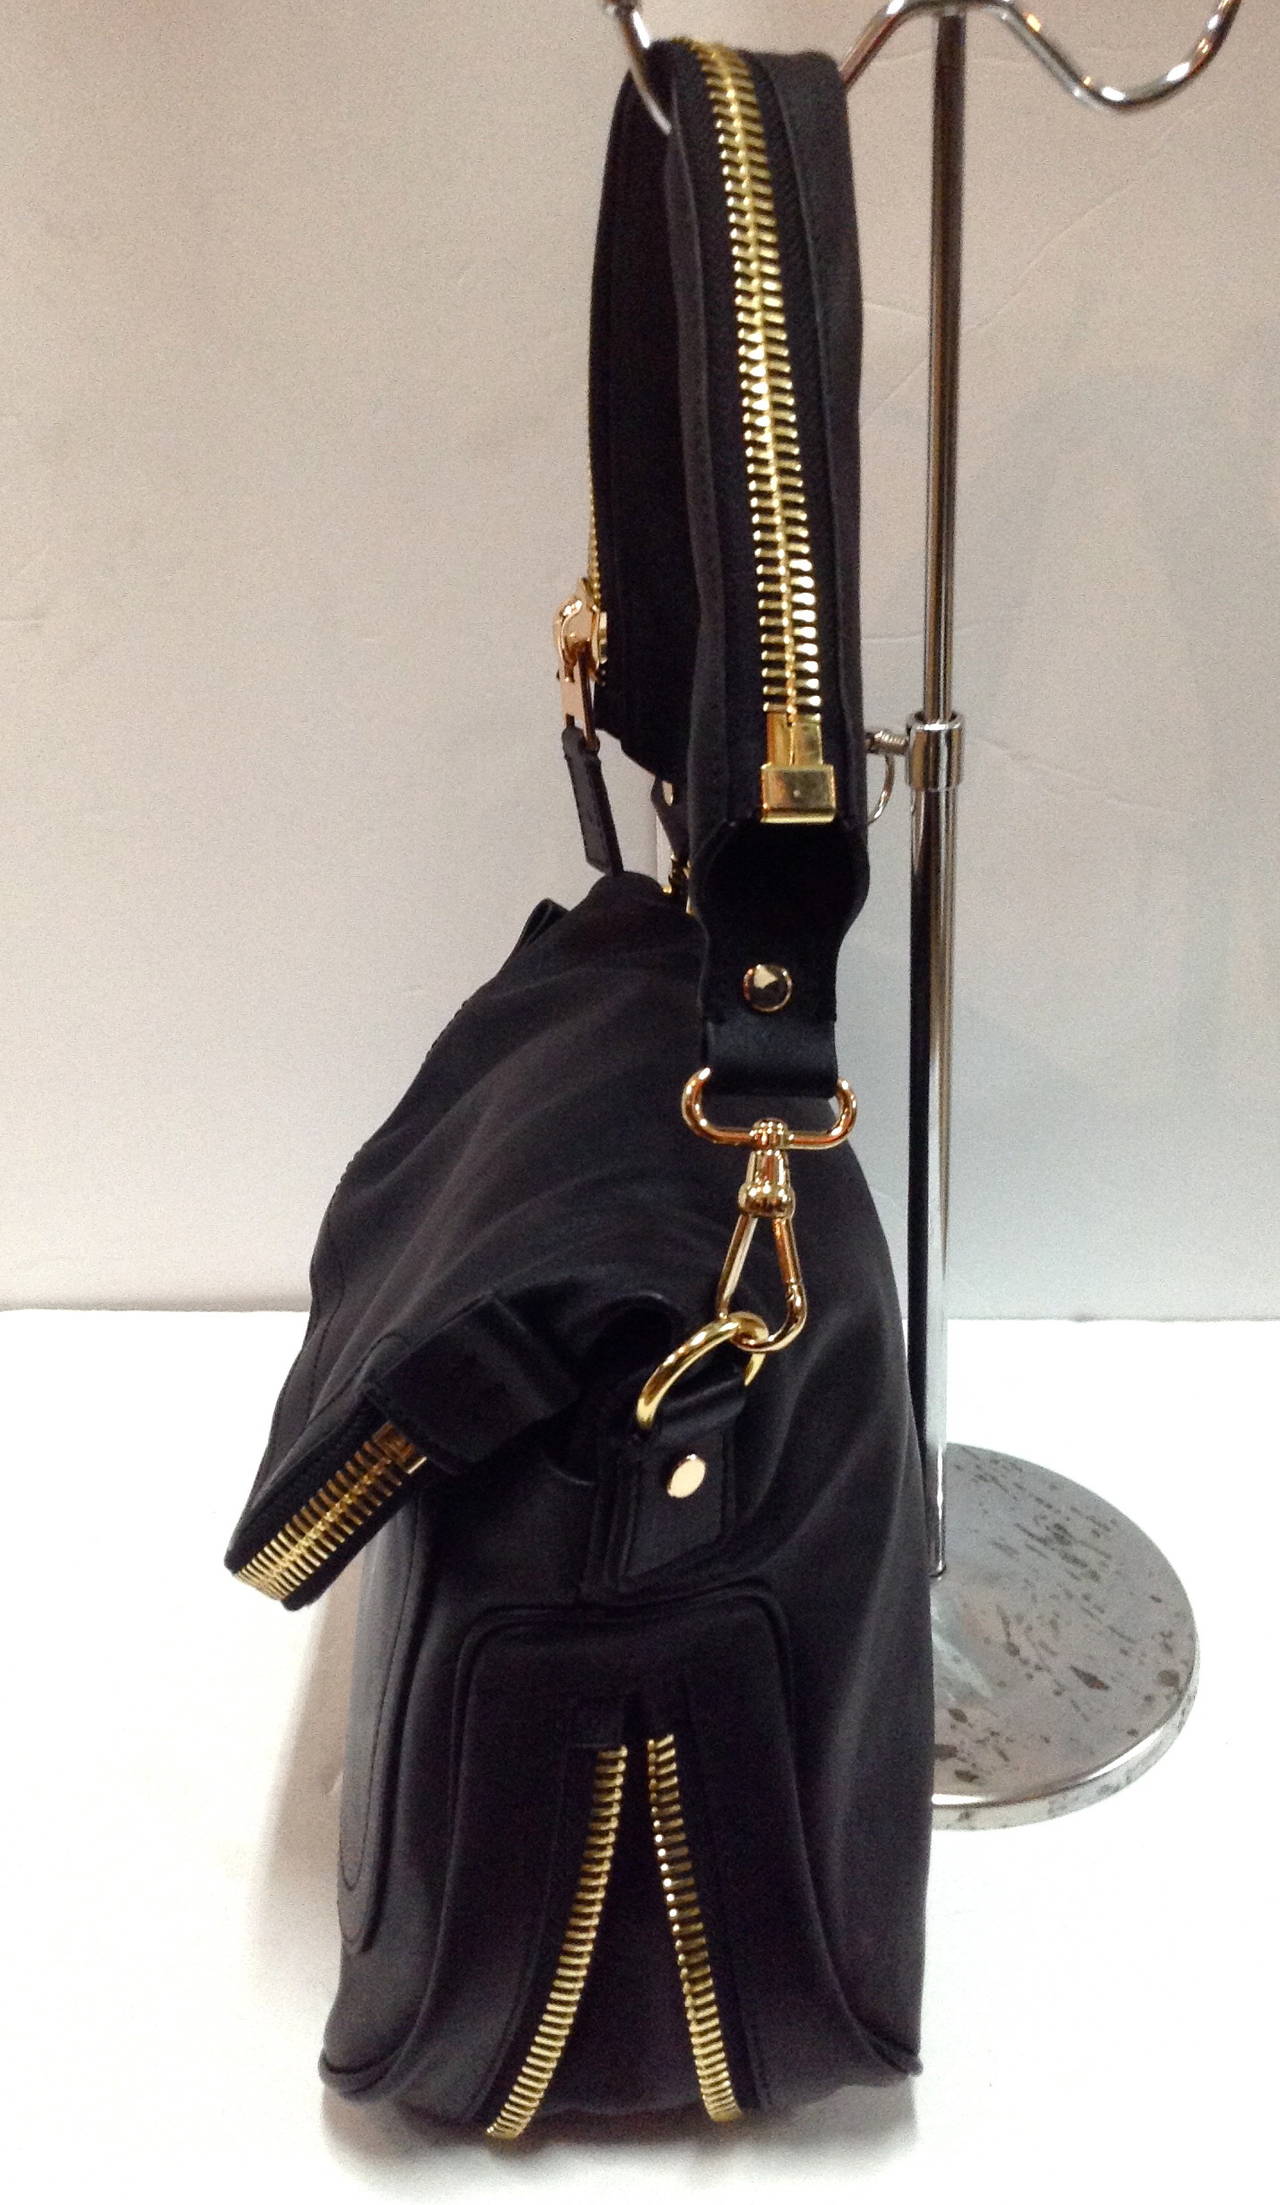 2013 Tom Ford Jennifer Leather Shoulder Bag Retail $3200 For Sale 2